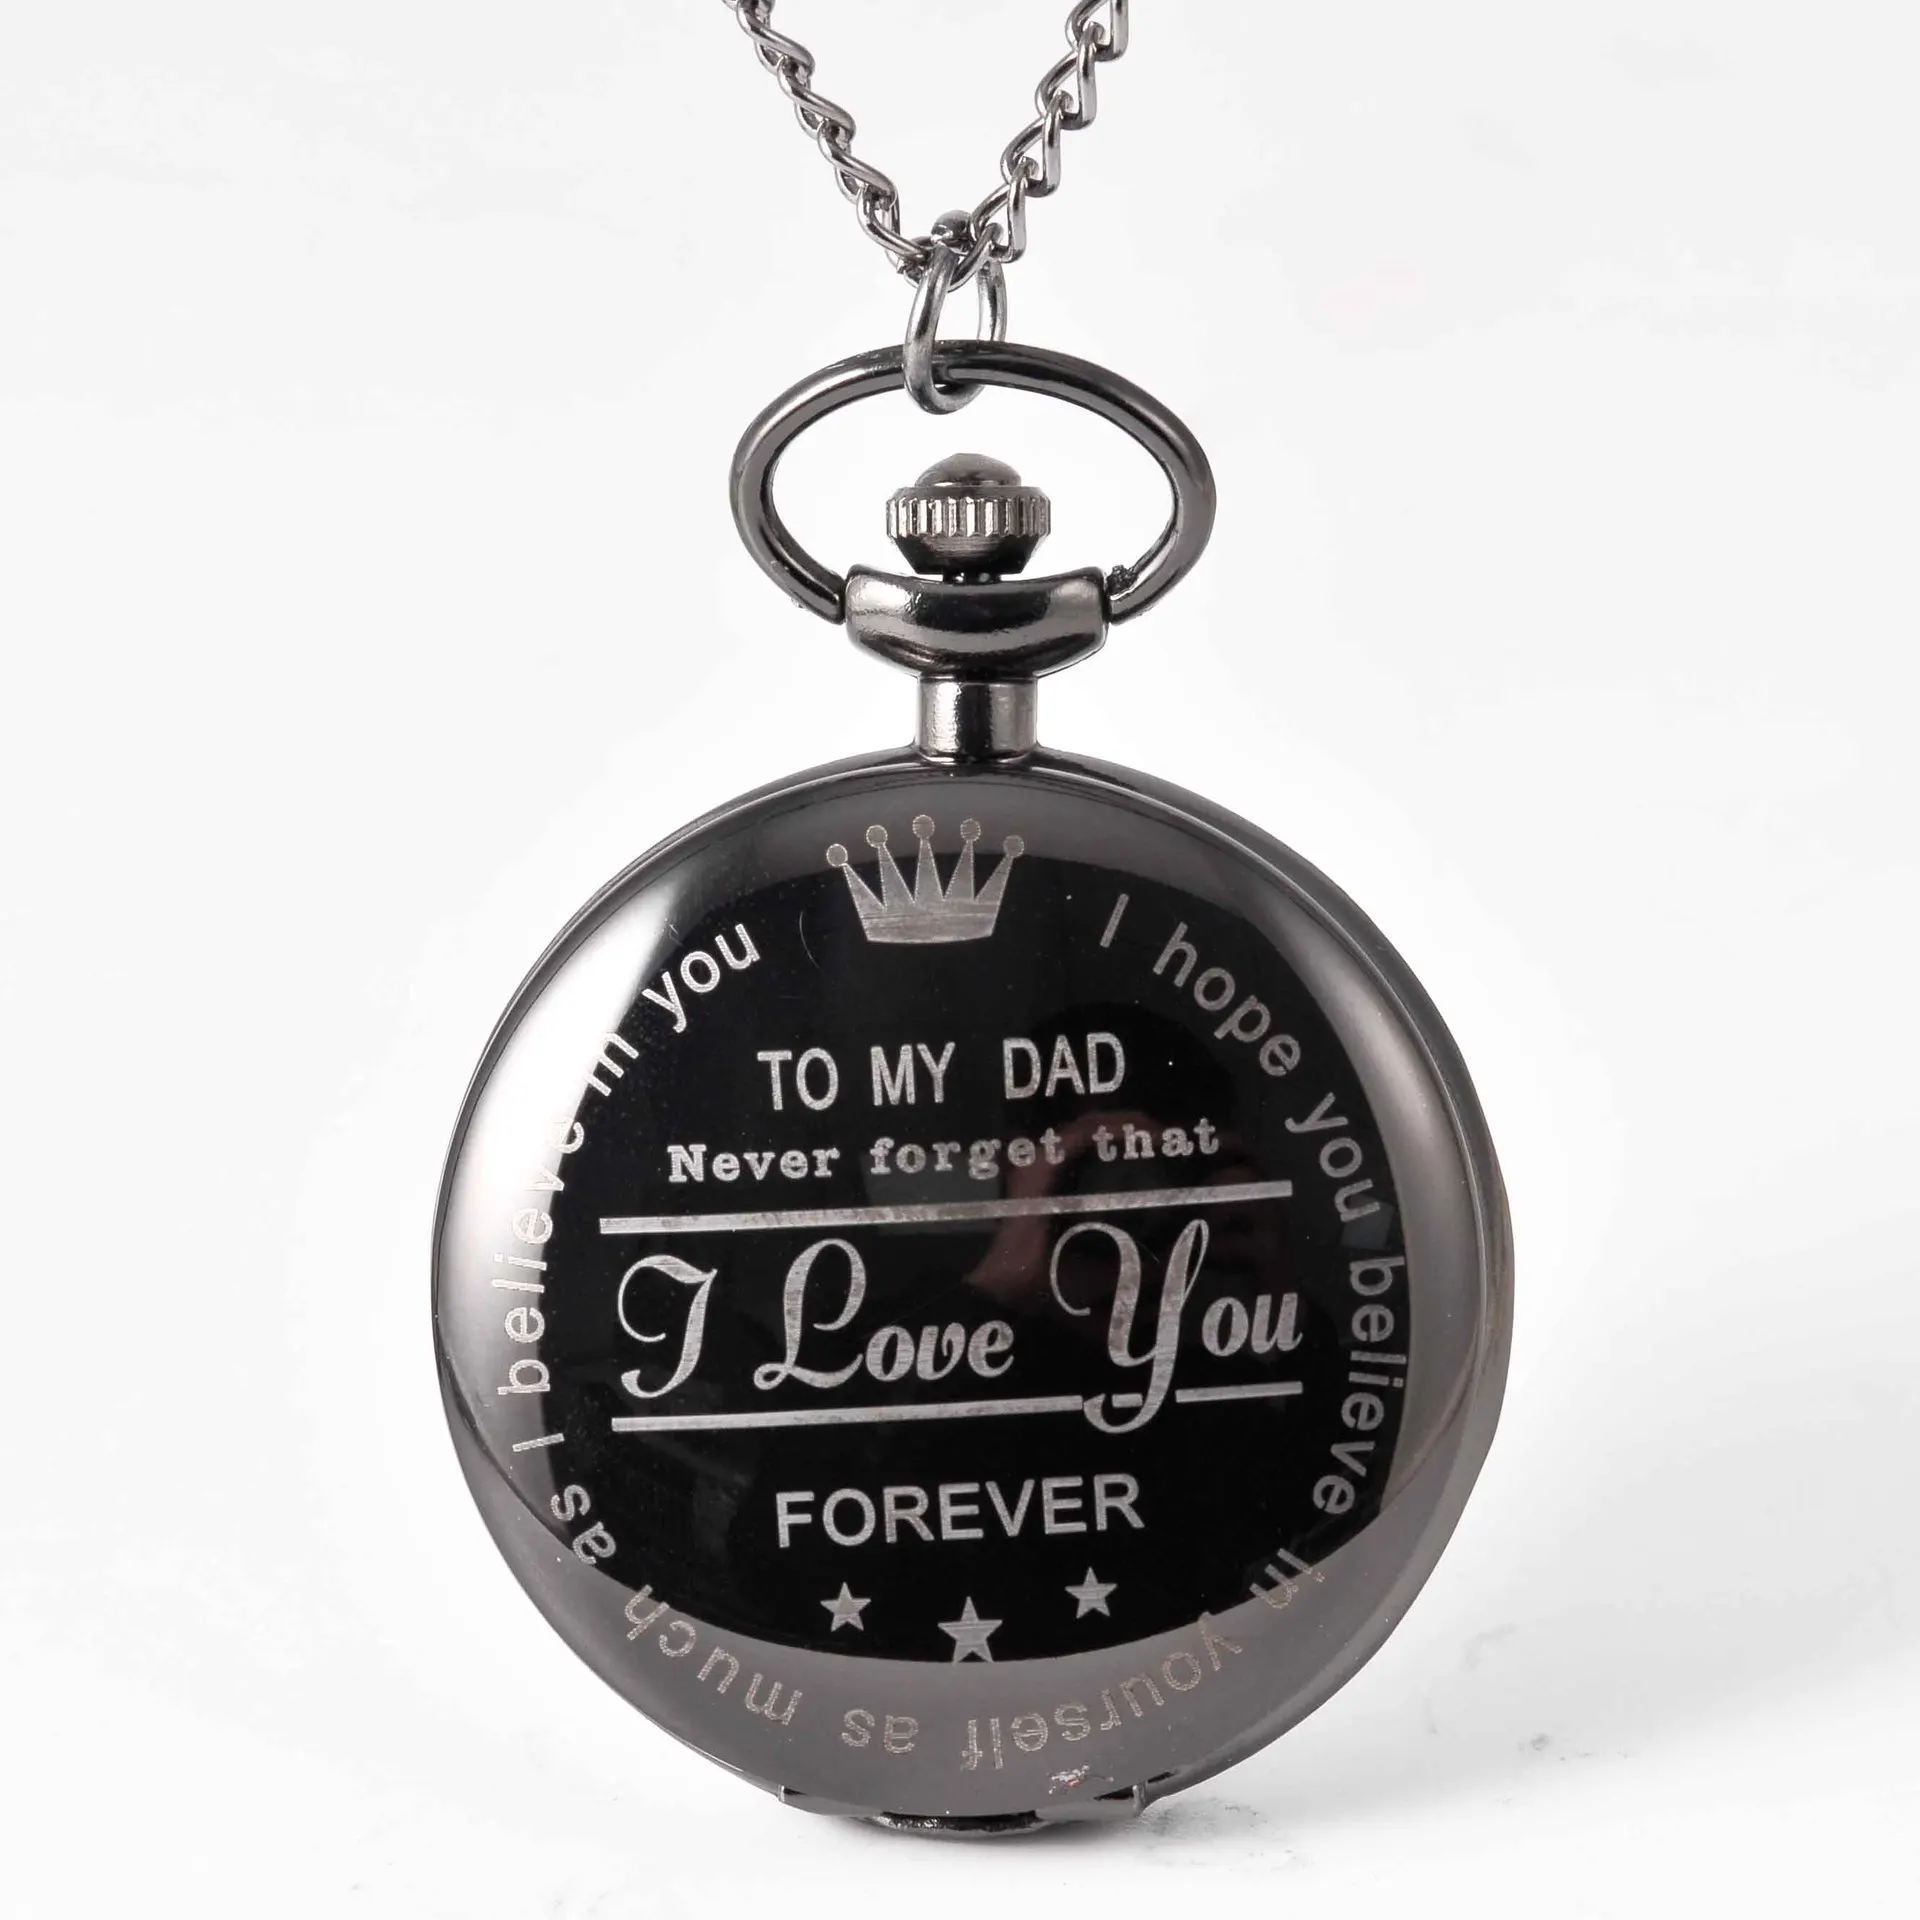 Карманные часы Бронзовый кварц карманные часы цепи цепочки и ожерелья для женщин/для мужчин часы подарок